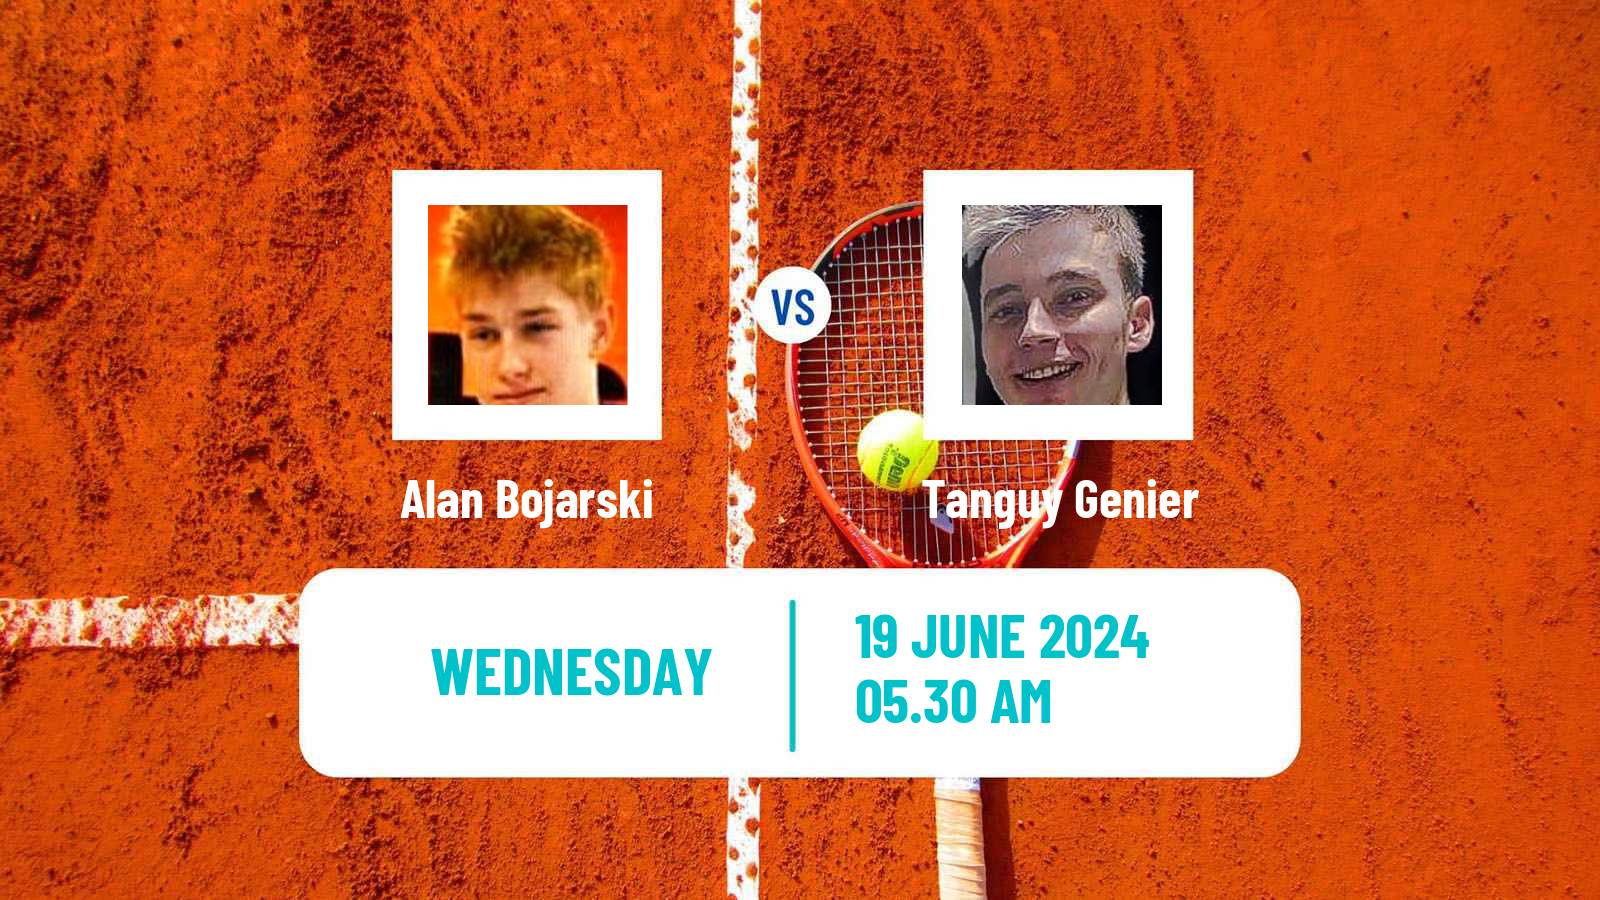 Tennis ITF M15 Koszalin 2 Men Alan Bojarski - Tanguy Genier